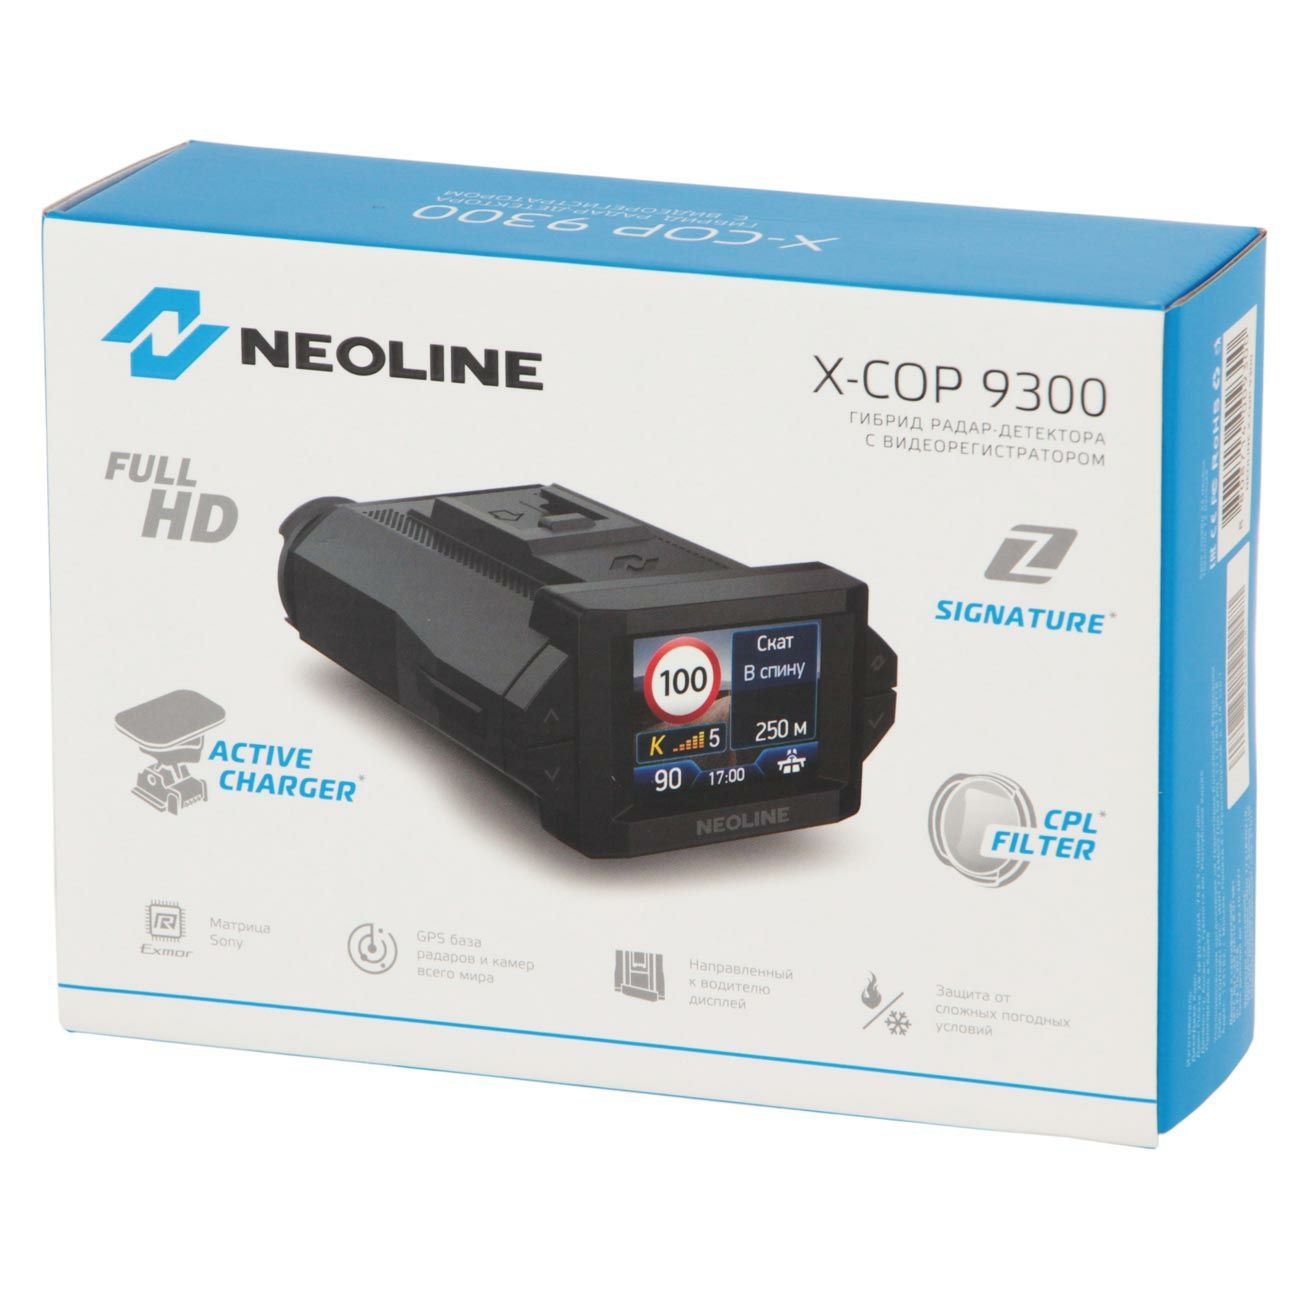 Видеорегистратор
NEOLINE X-COP 9300/9300s